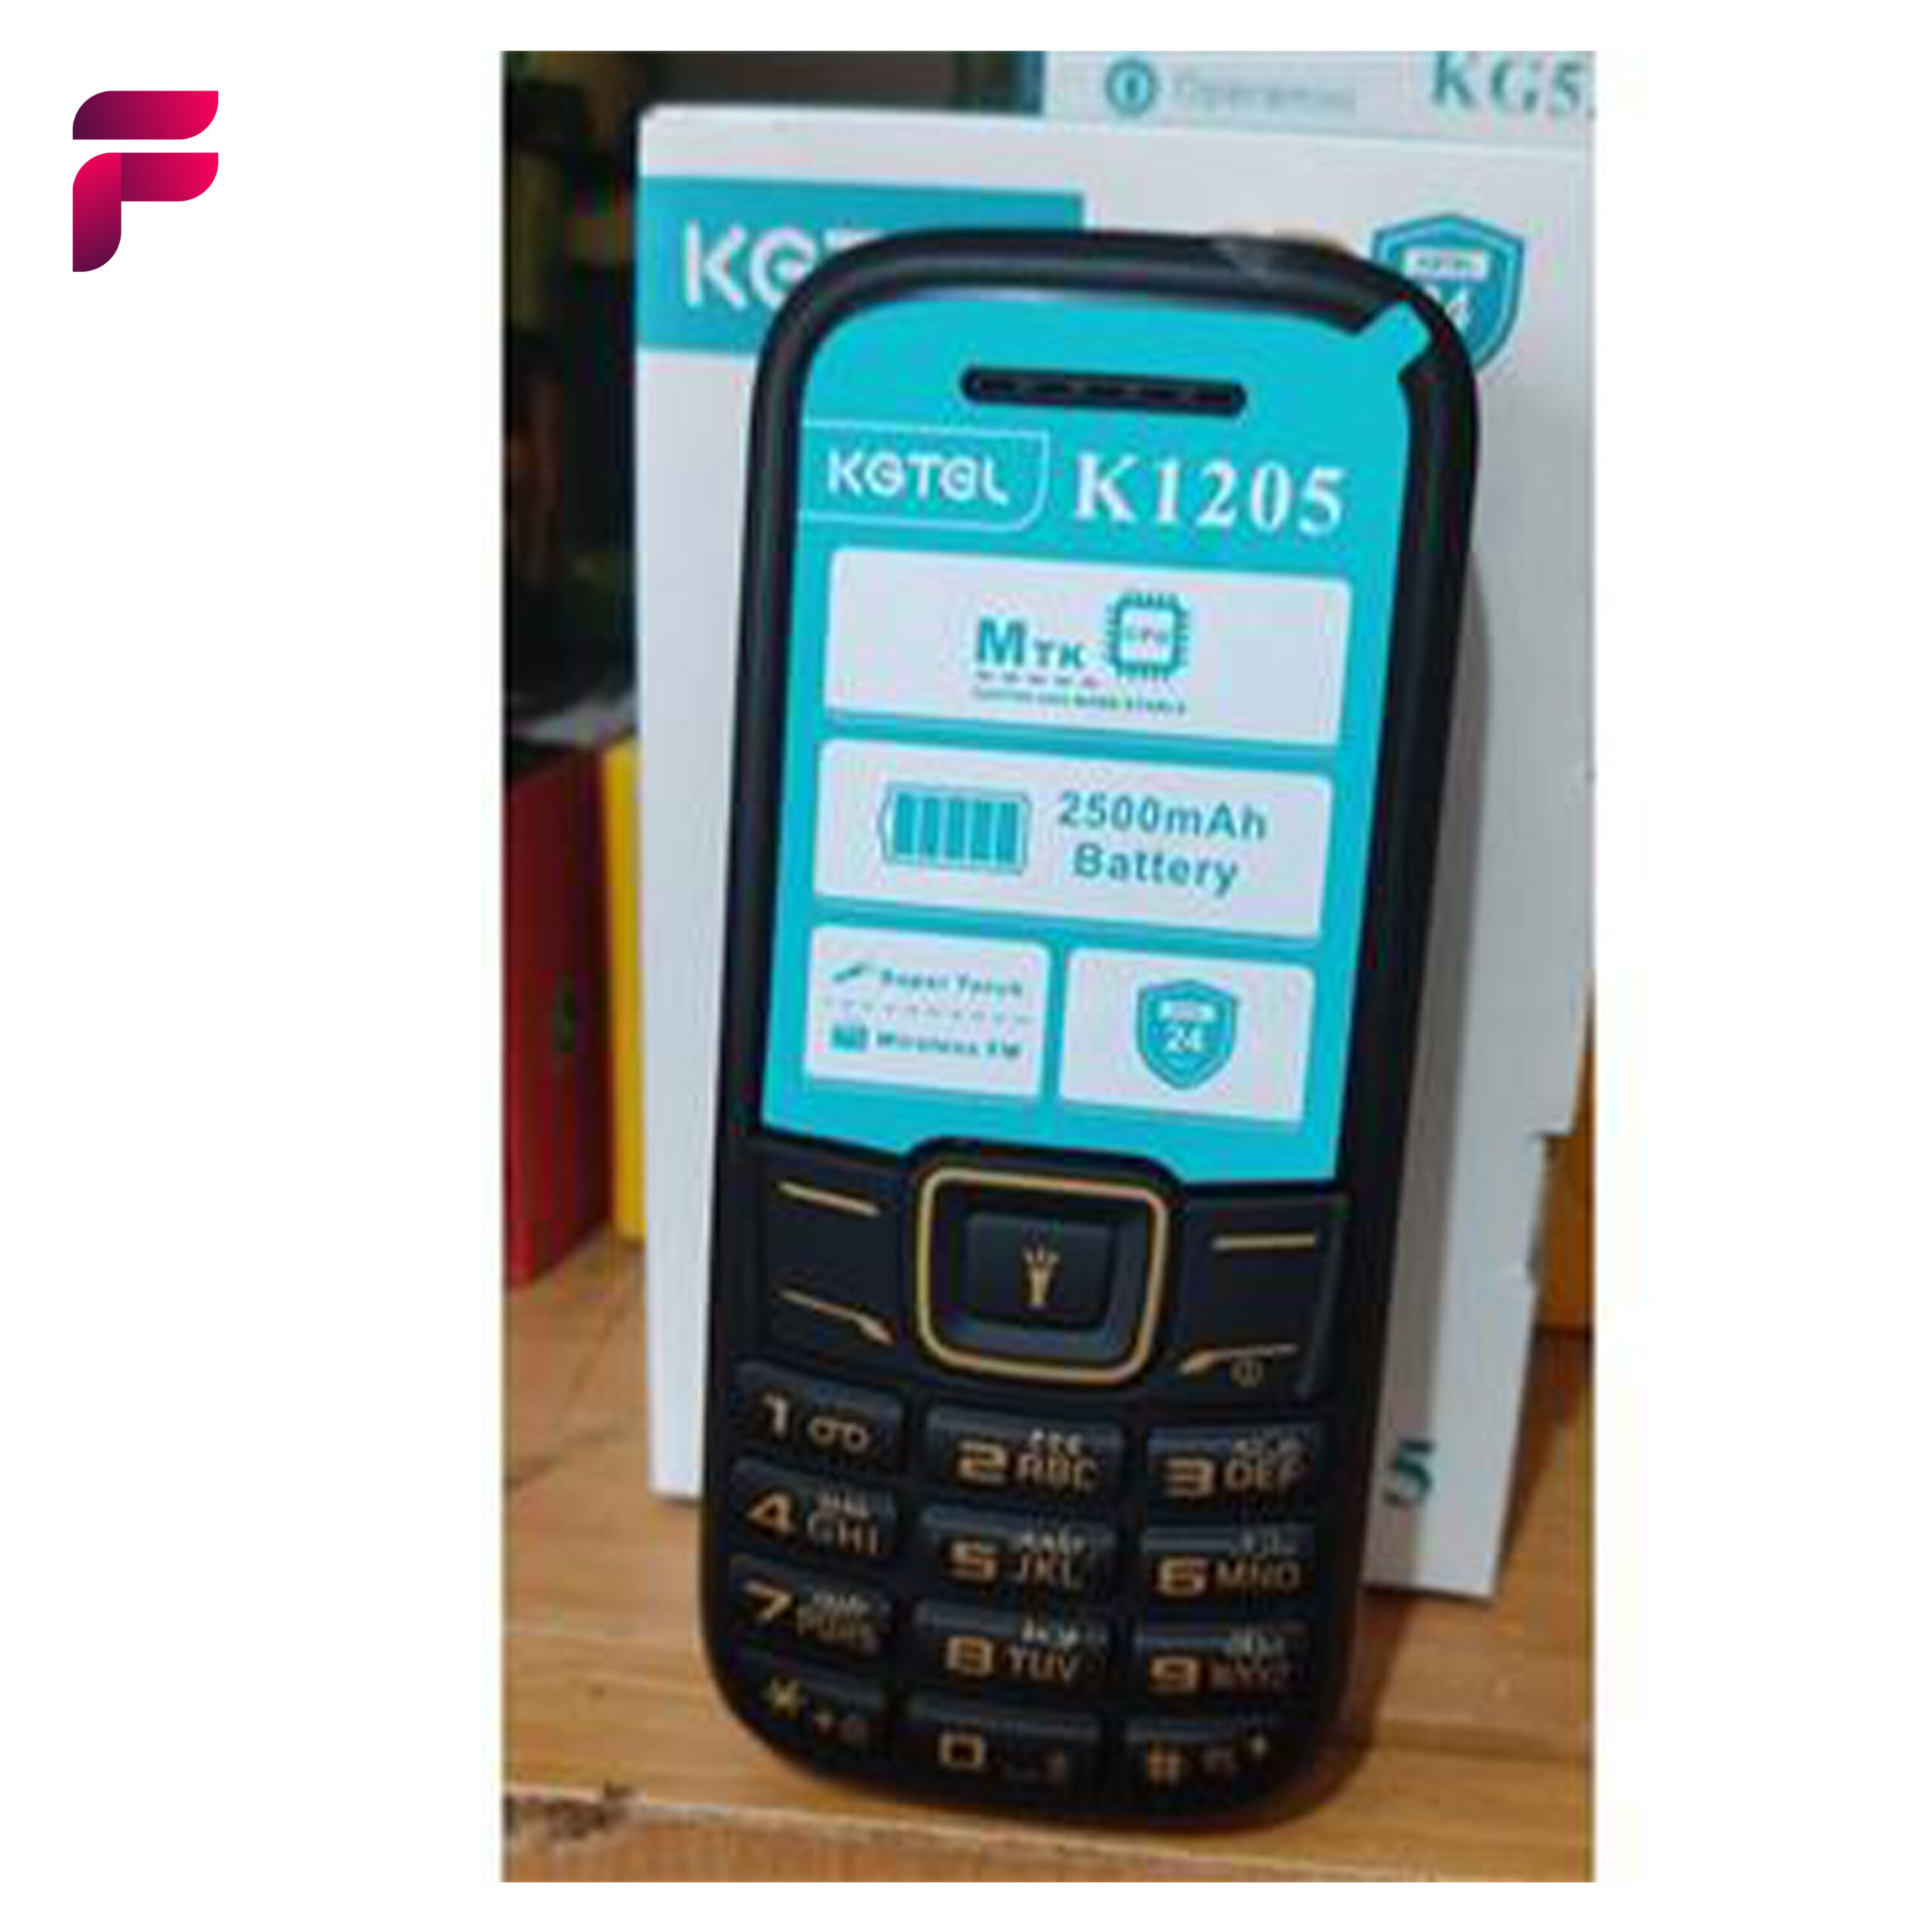 گوشی موبایل ساده کاجیتل مدل K1205 KGTEL - فروشگاه اینترنتی فروشنده